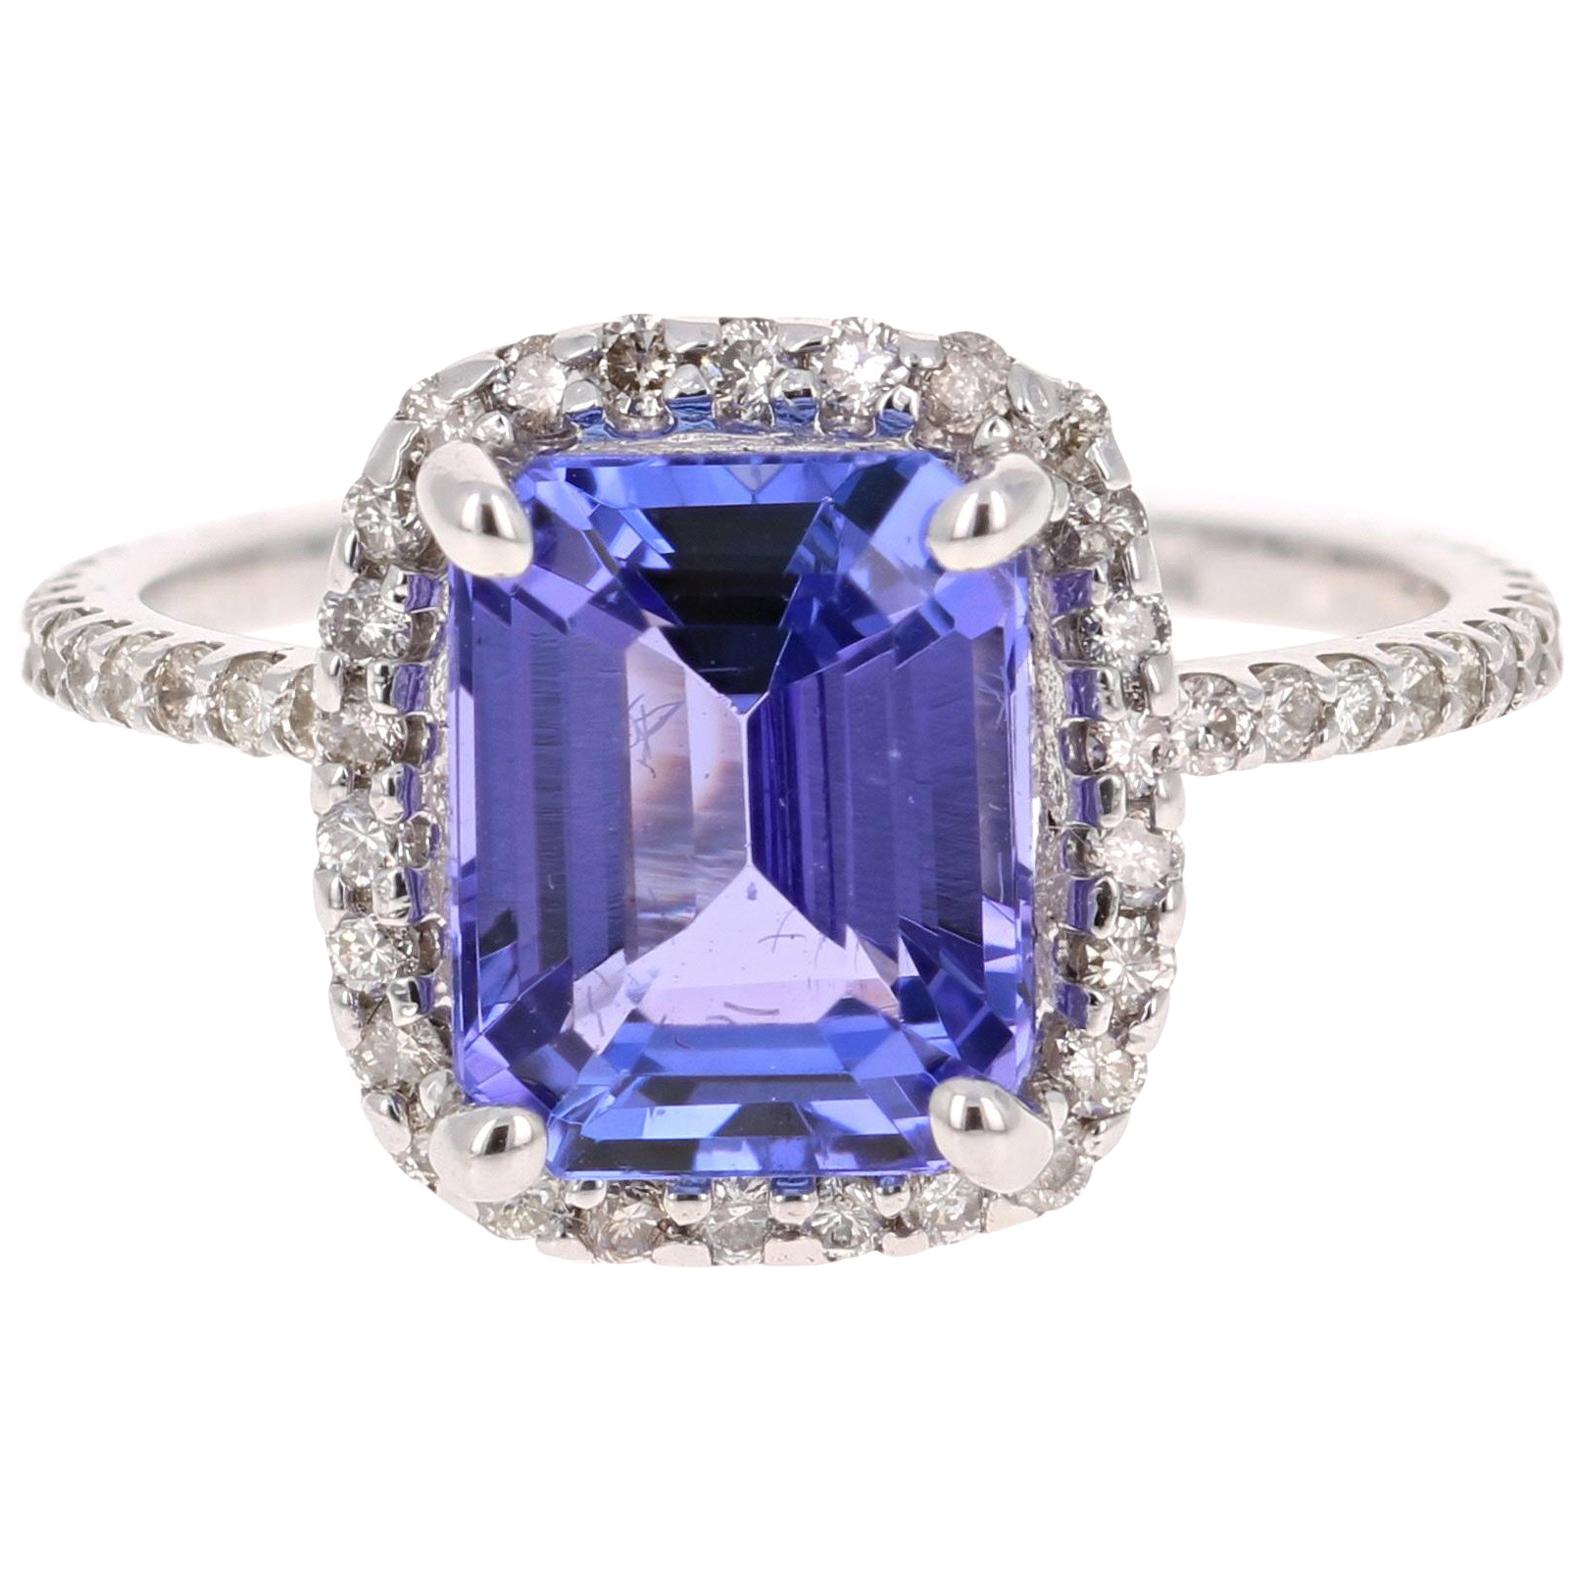 4.30 Carat Emerald Cut Tanzanite Diamond 14 Karat White Gold Engagement Ring